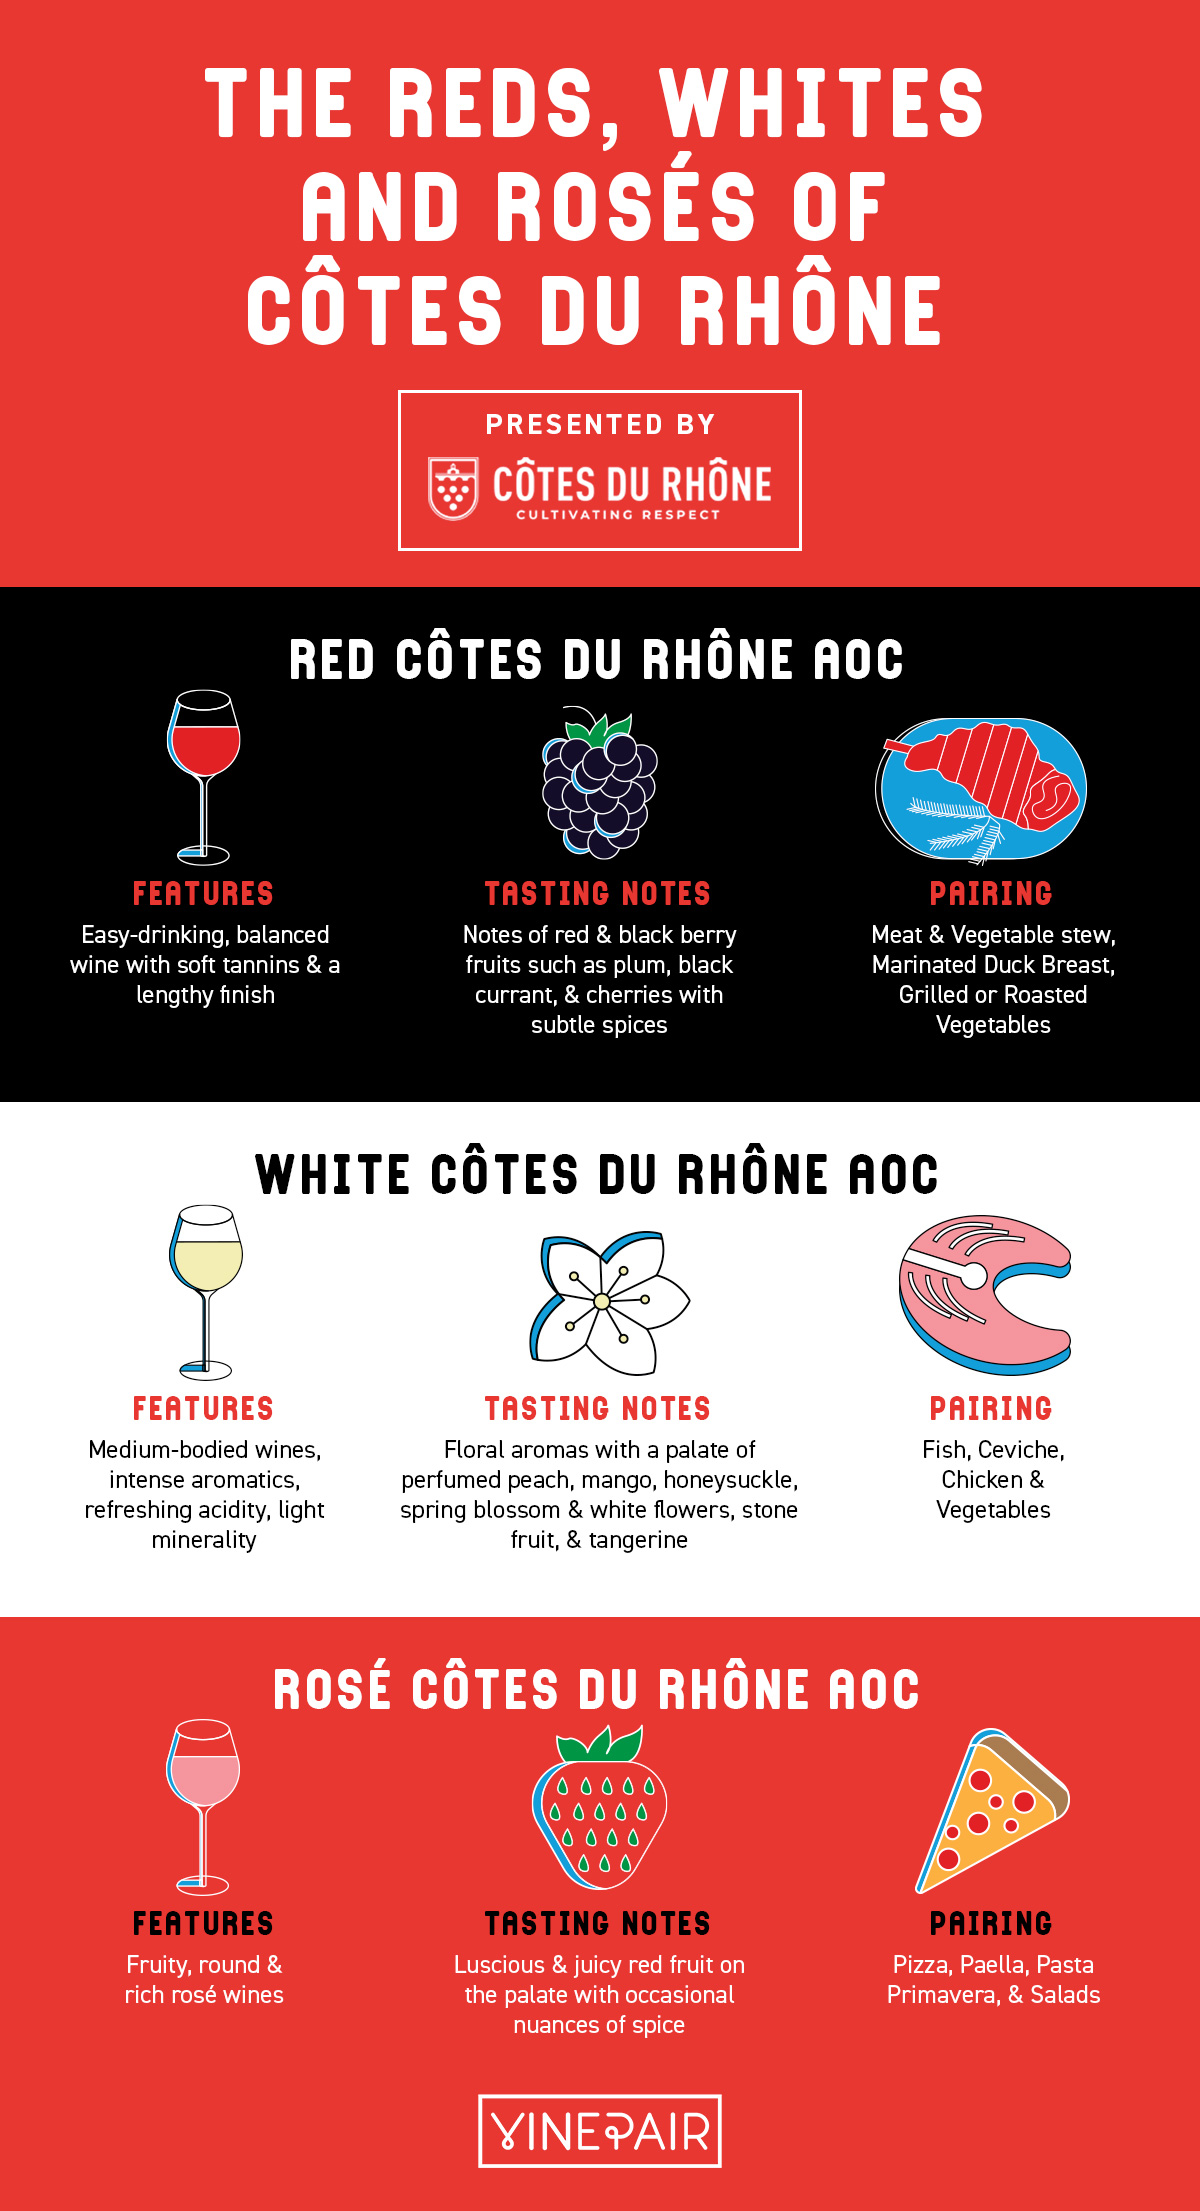 Côtes du Rhône wines